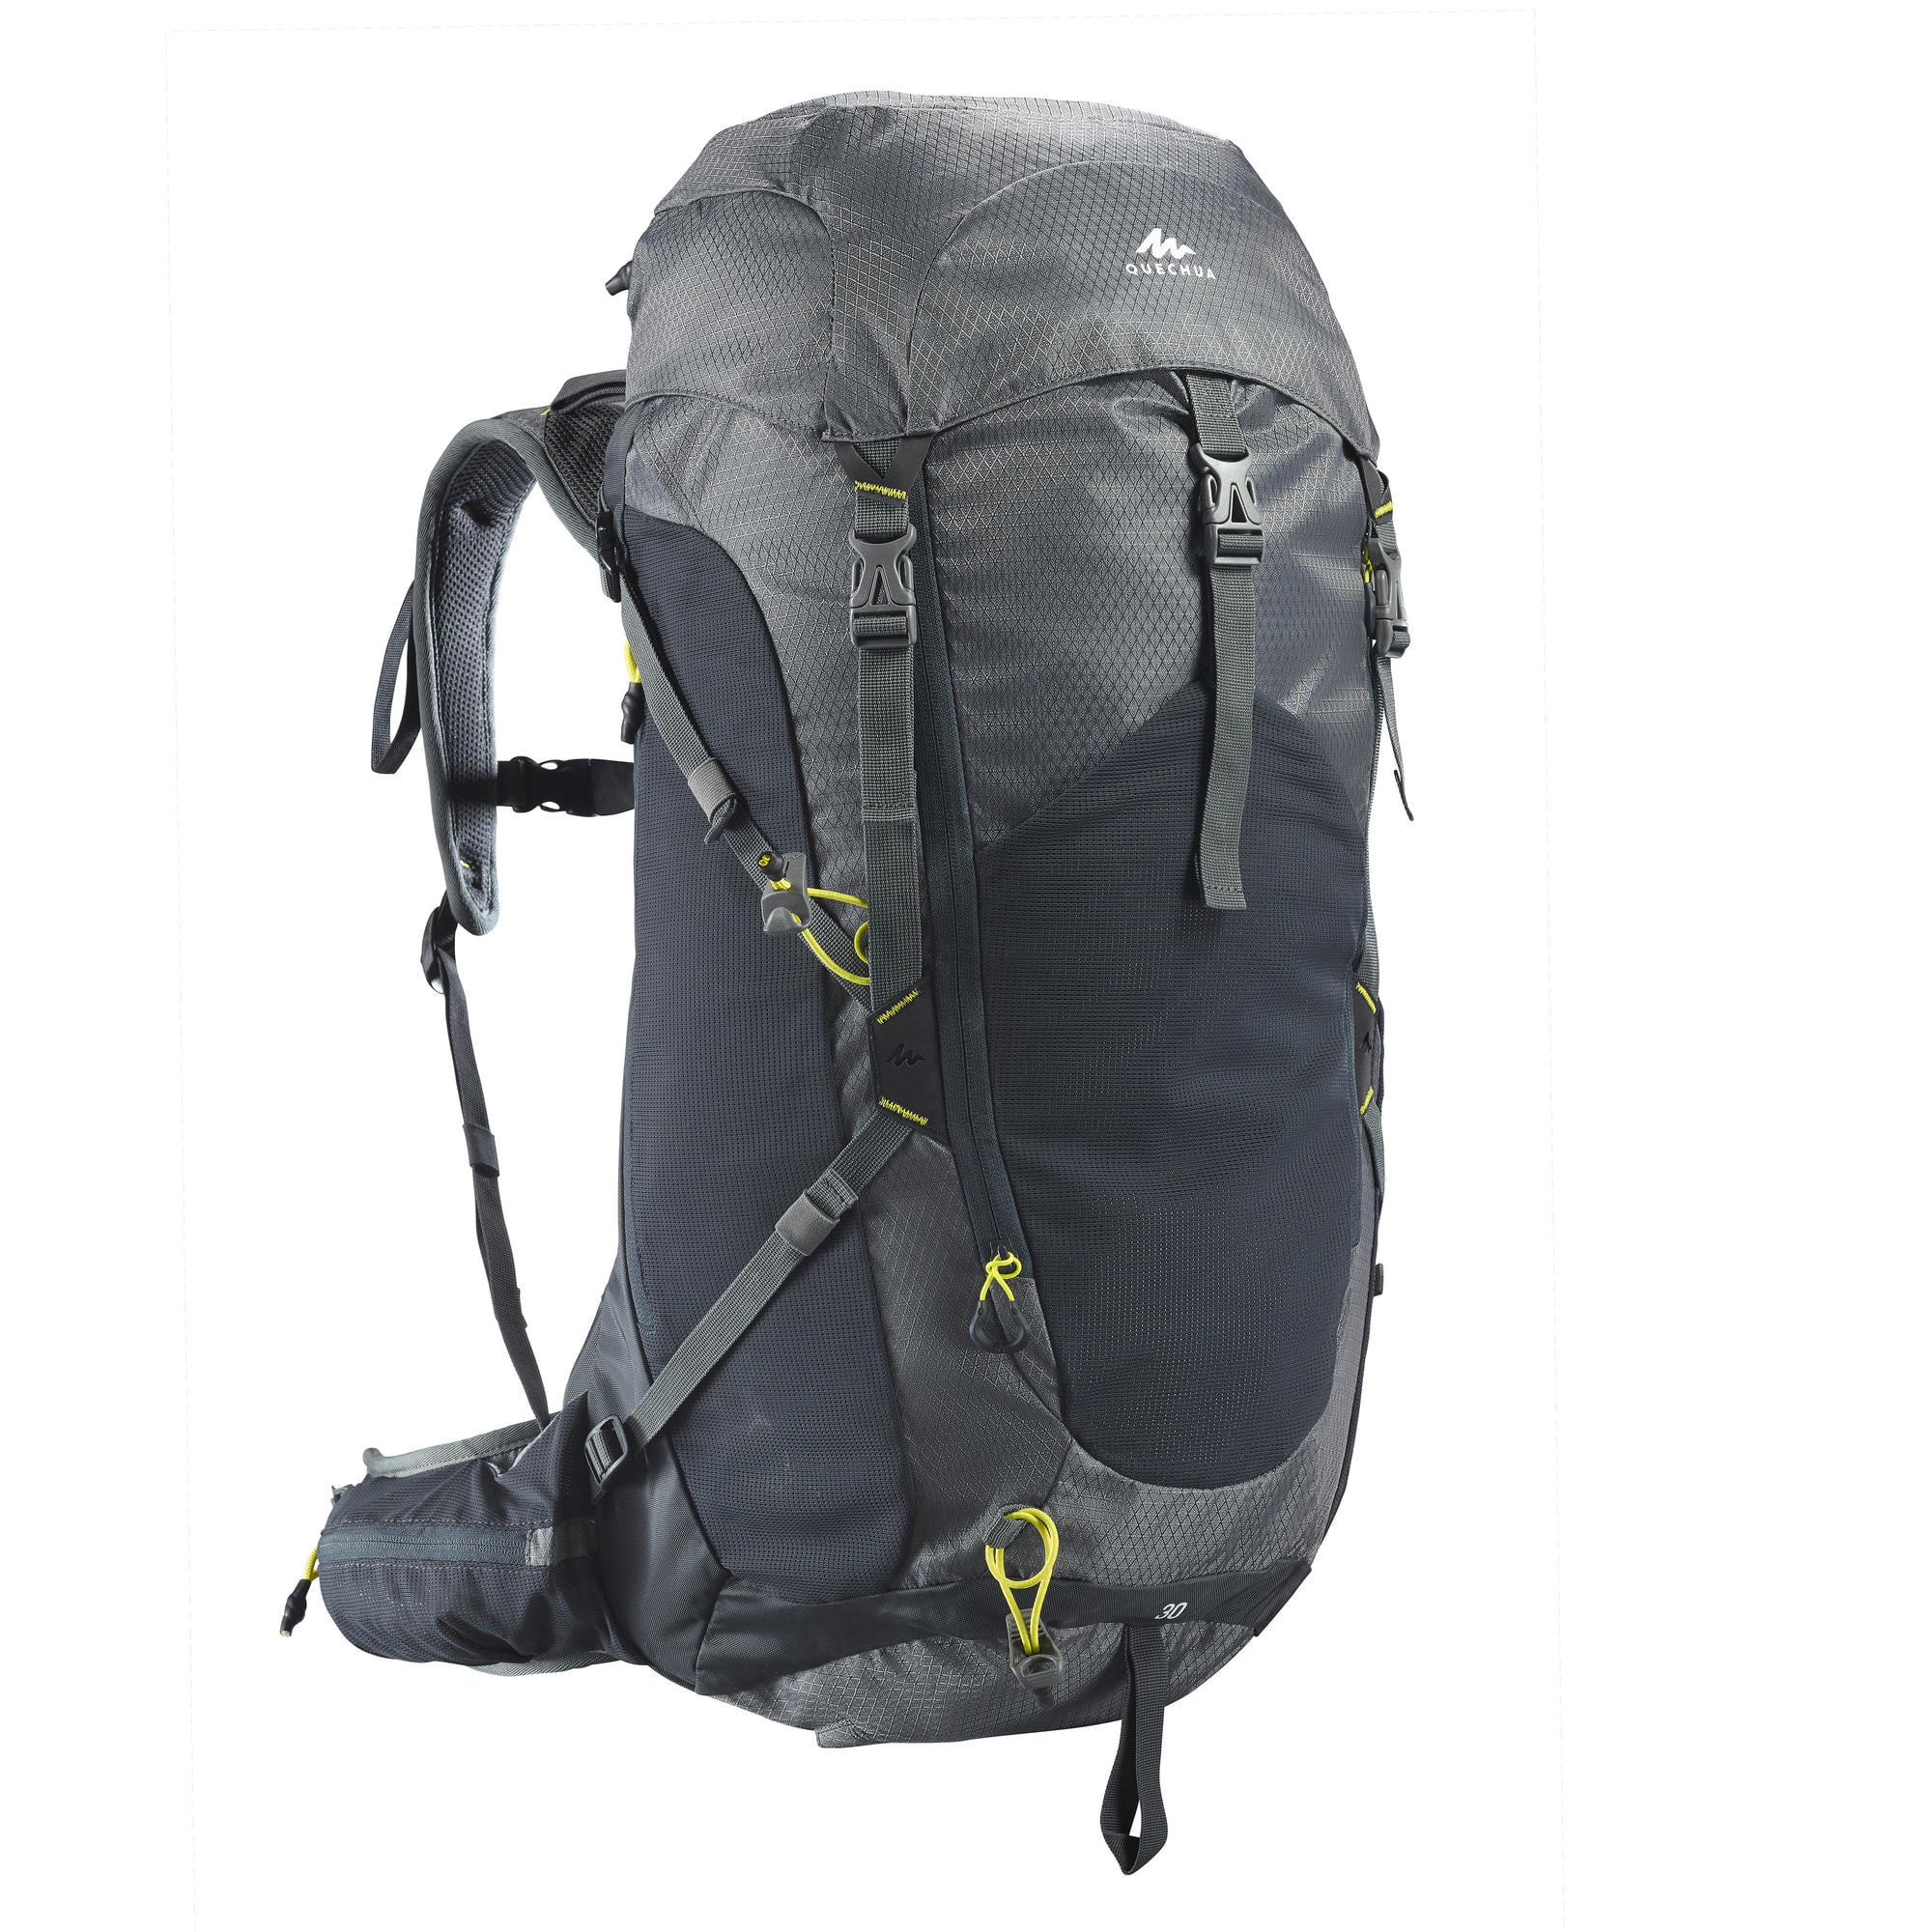 decathlon mh500 backpack